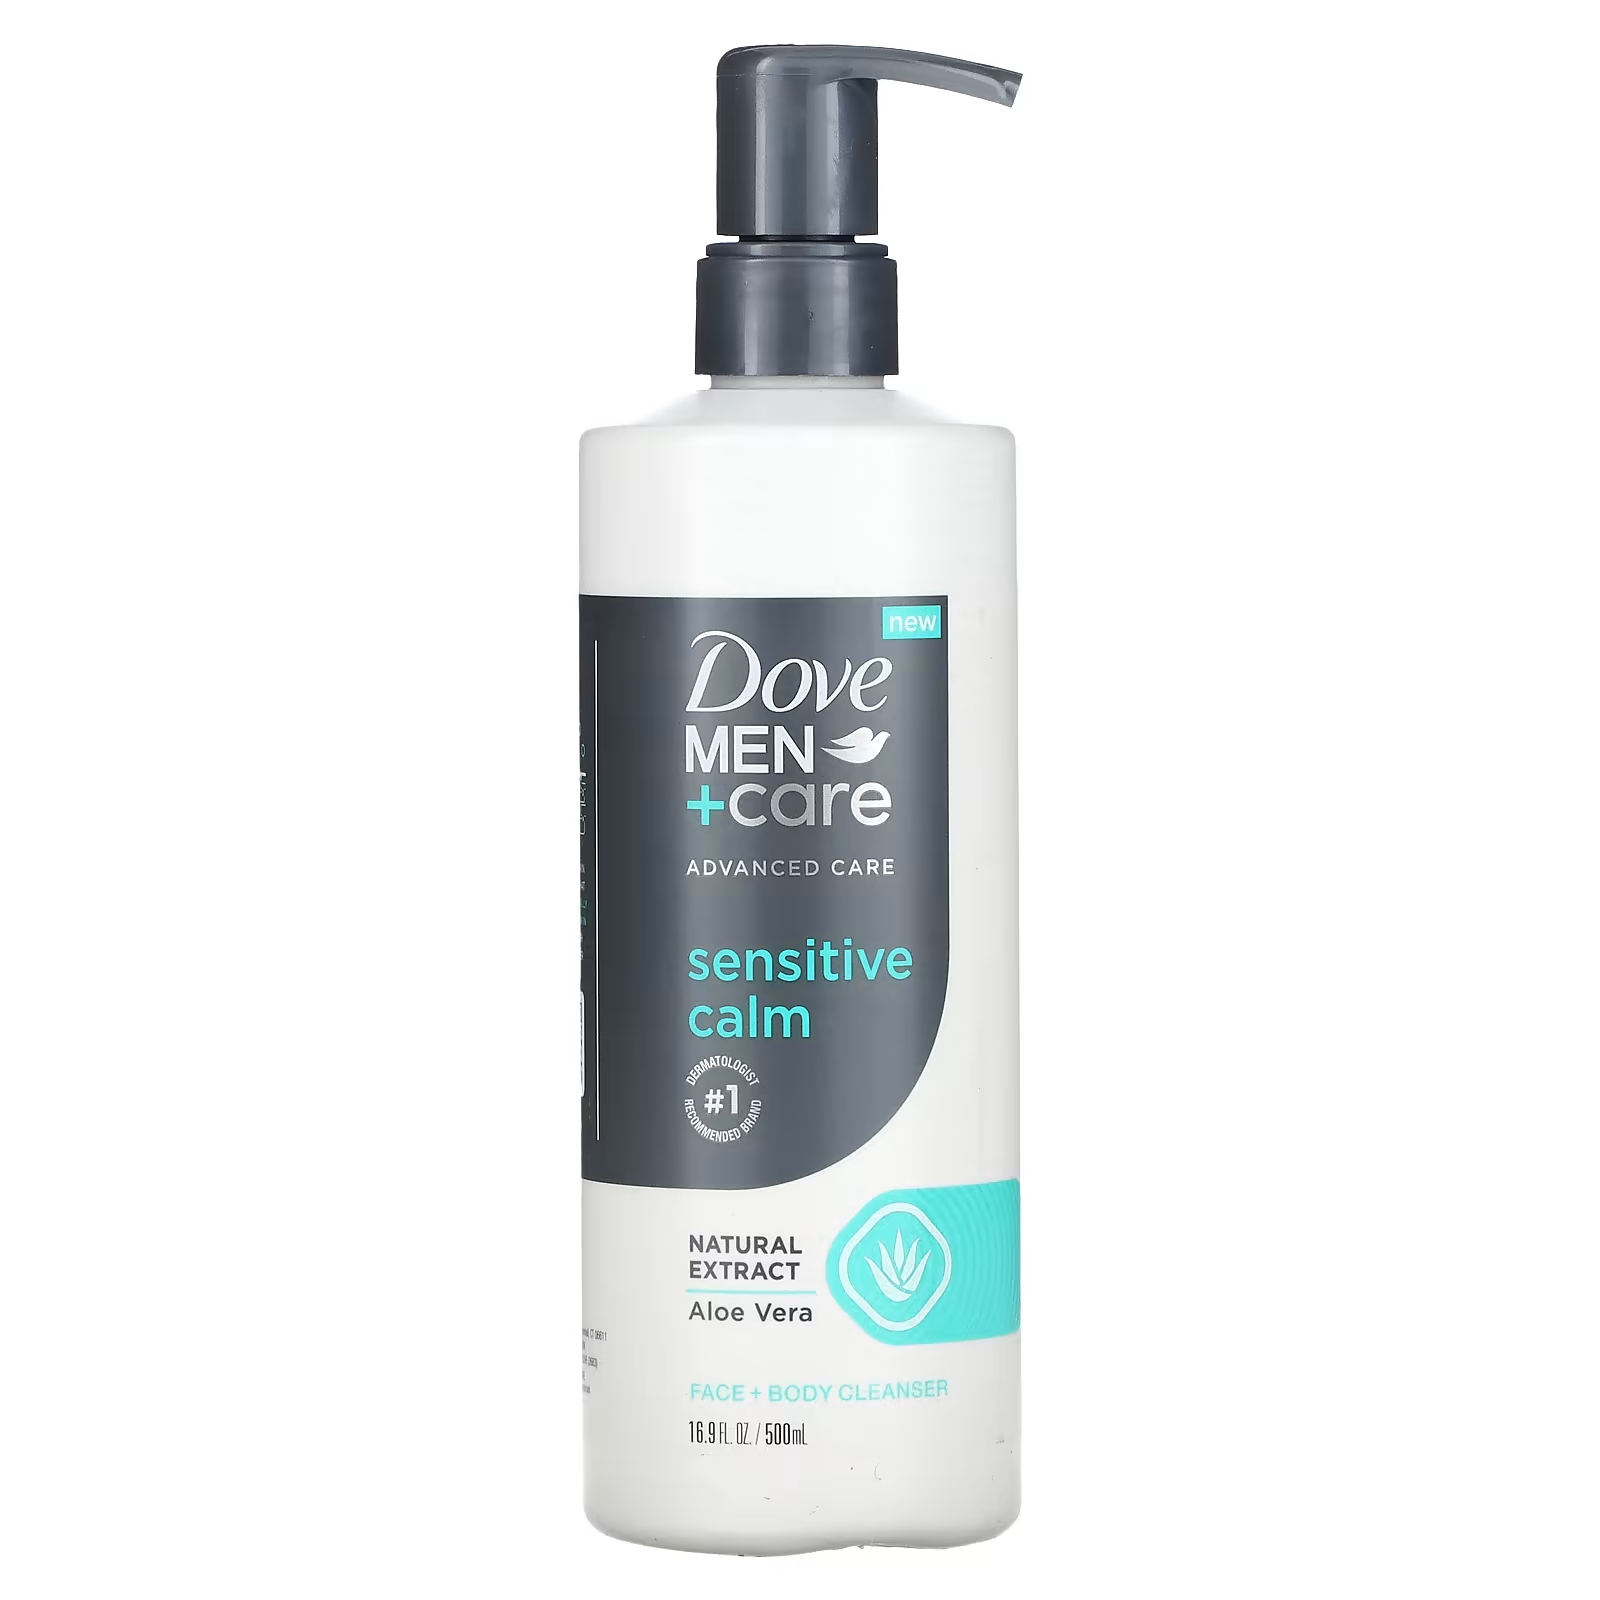 Очищающее средство Dove Men+Care для лица и тела dove men care мыло для тела и лица свежесть 75 г 2 6 унции